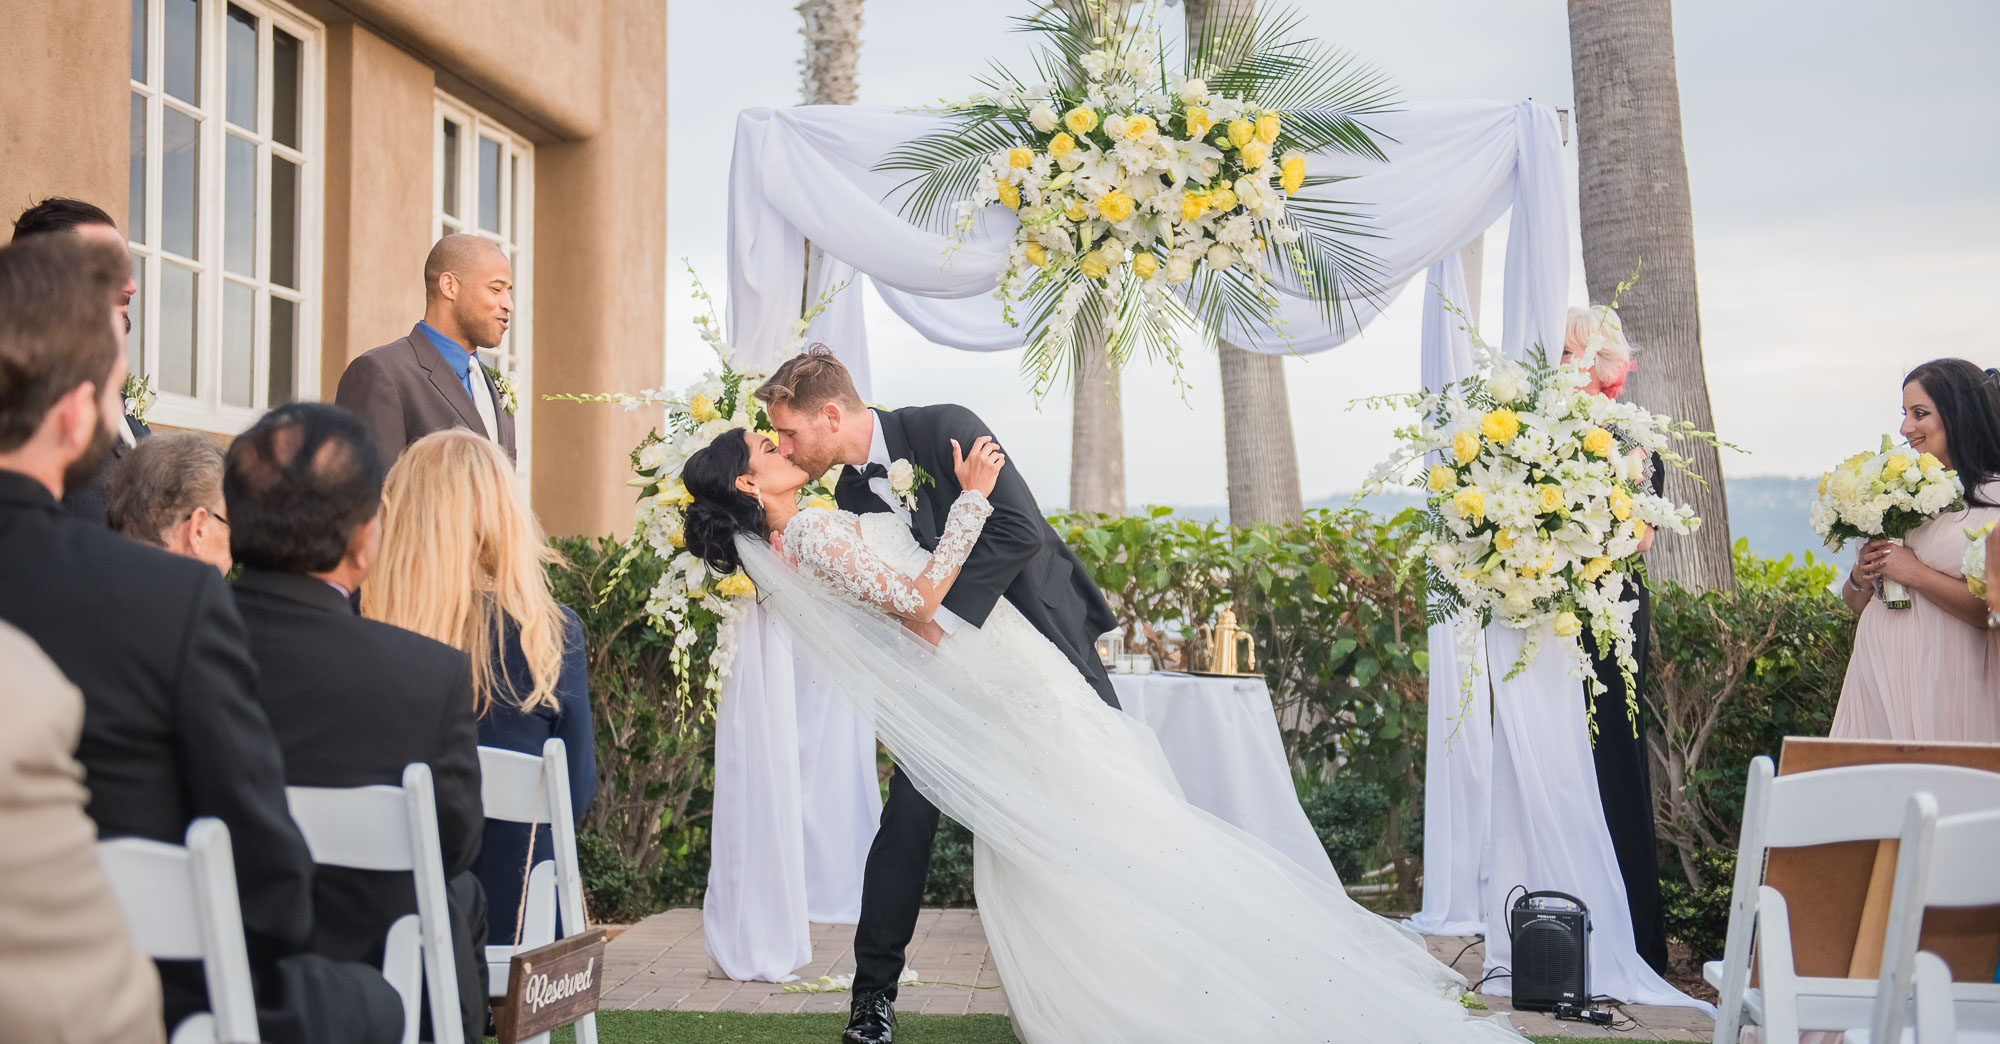 Manuri & Chris’ Portofino Hotel Wedding – Redondo Beach featured slider image